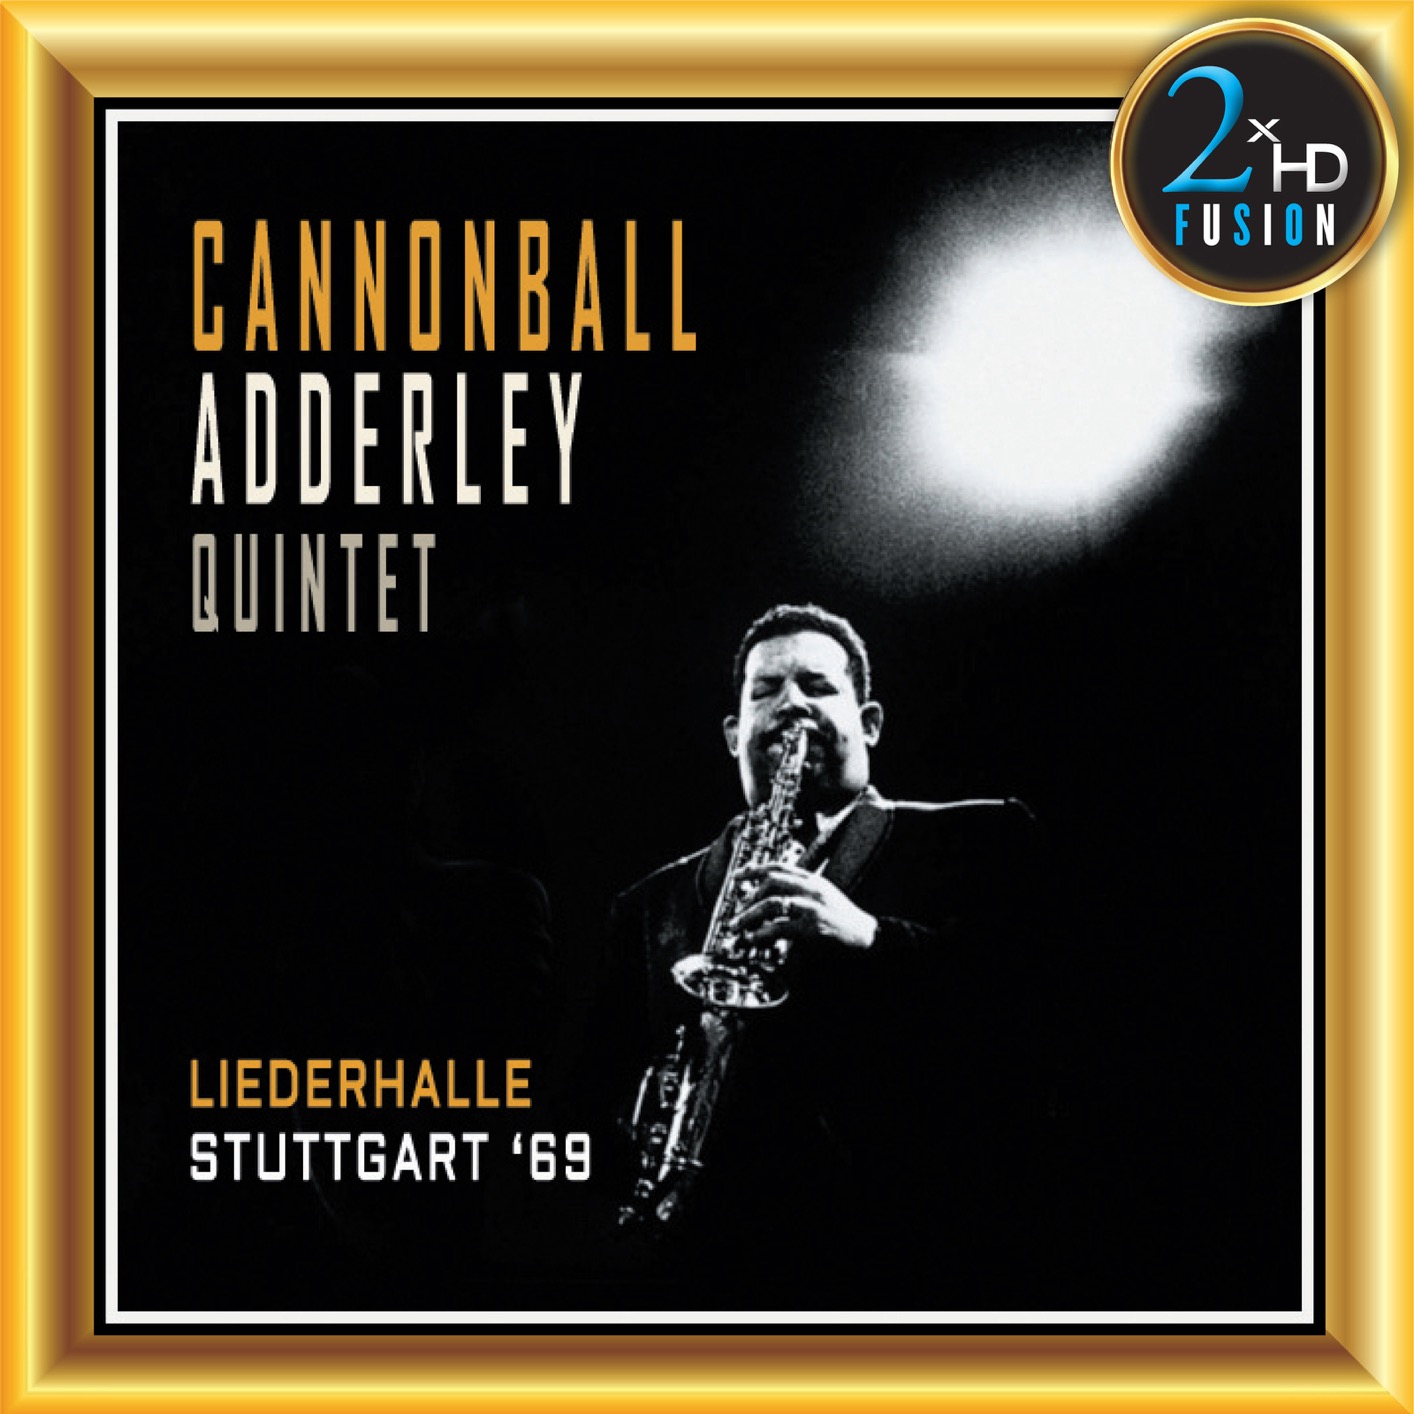 Cannonball Adderley Quintet - Cannonball Adderley Quintet (2018) [FLAC 24bit/192kHz]